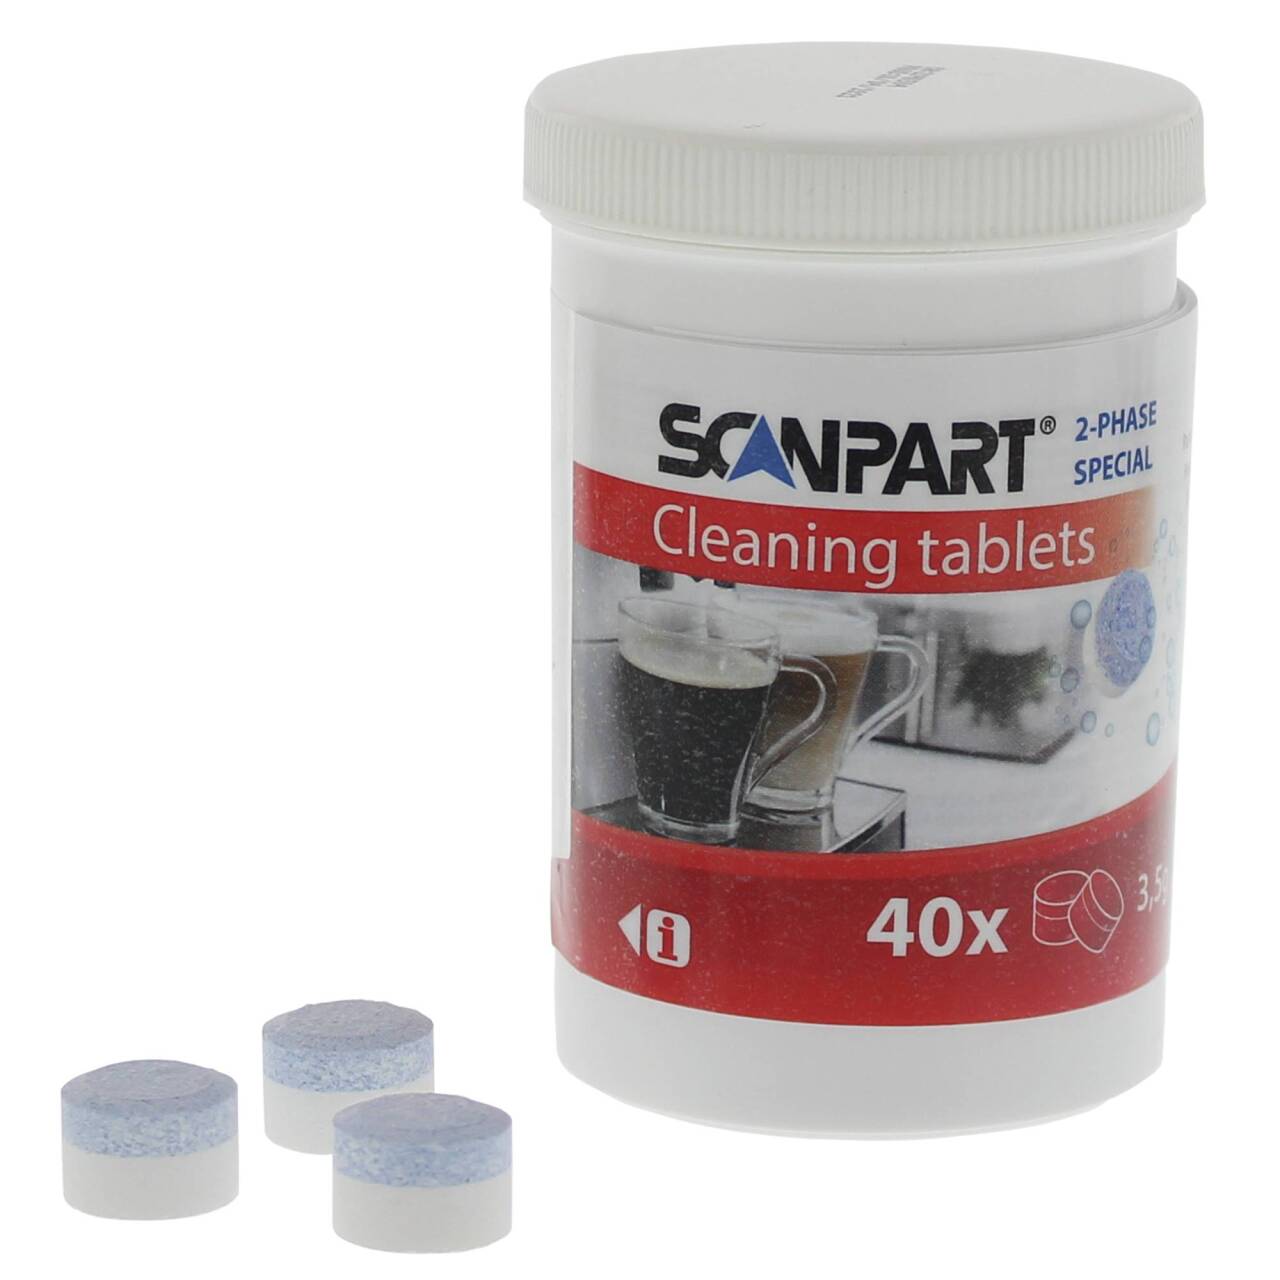 Scanpart reinigingstabletten 40x